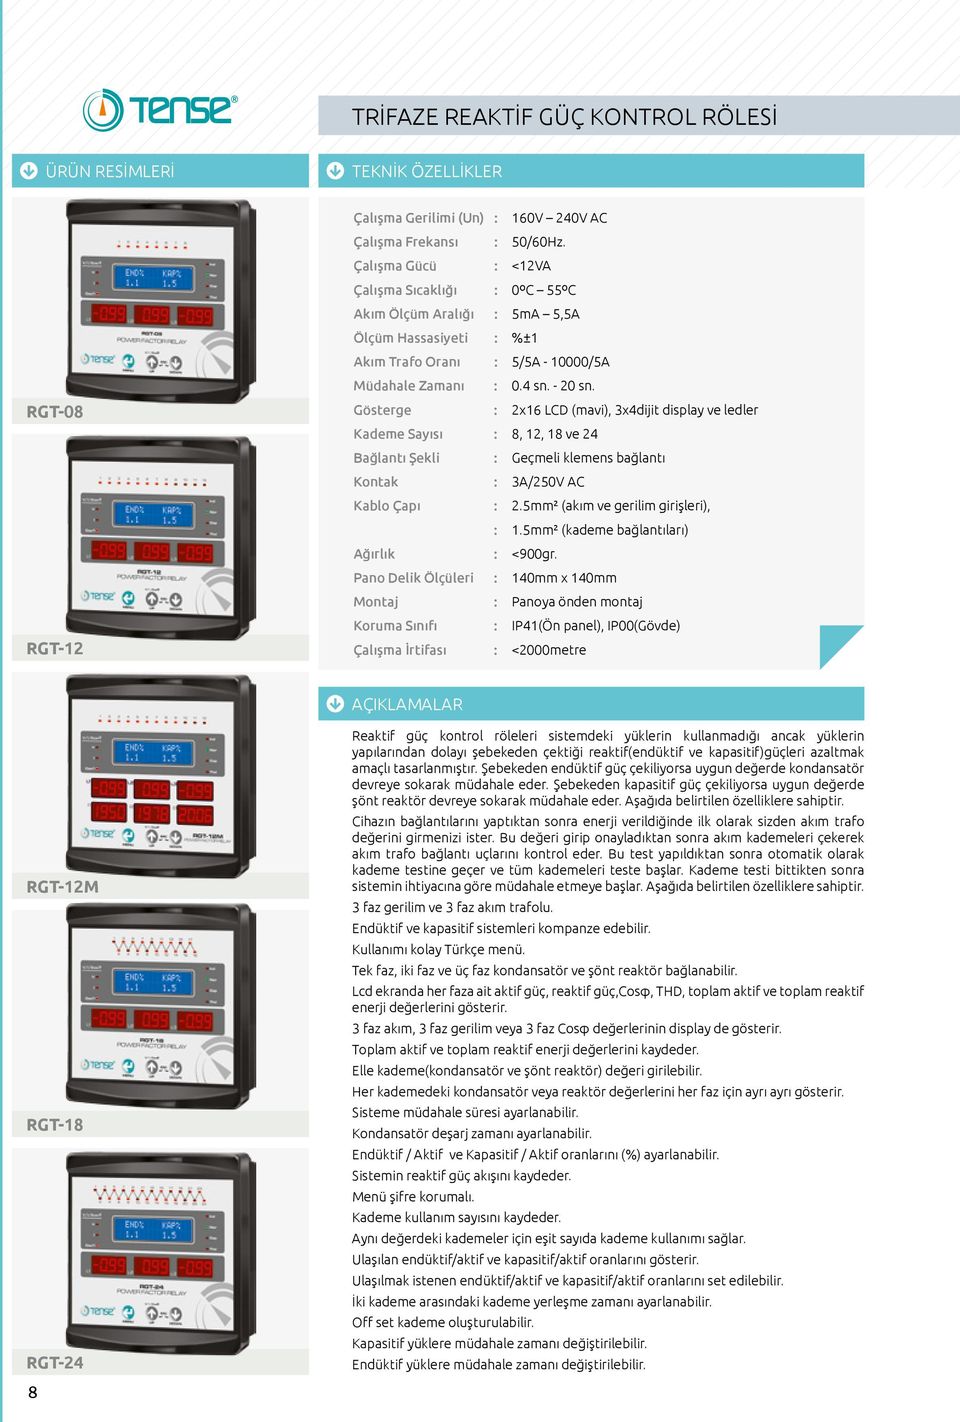 Gösterge : 2x16 LCD (mavi), 3x4dijit display ve ledler Kademe Sayısı : 8, 12, 18 ve 24 Bağlantı Şekli : Geçmeli klemens bağlantı Kontak : 3A/250V AC Kablo Çapı : 2.